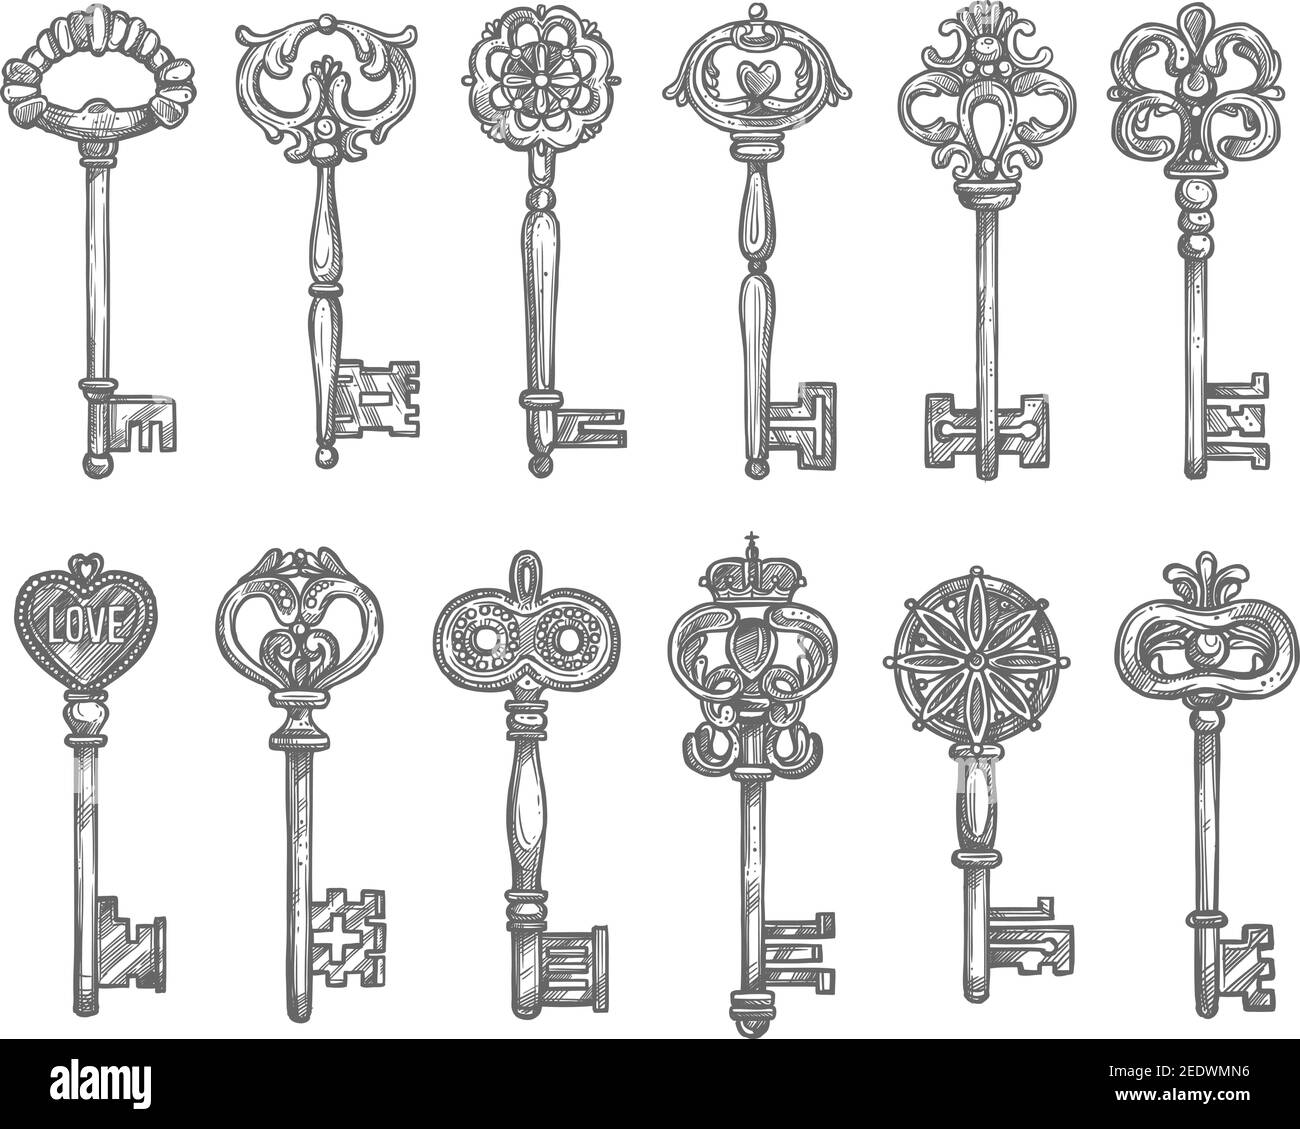 Alte Vintage Schlüssel und antike Skelett Schlüssel Skizze Set.  Türschlüssel mit langem Schaft und dekorativer Schleife, verziert mit  floralem Muster mit Krone, Herz, Fleur-d Stock-Vektorgrafik - Alamy